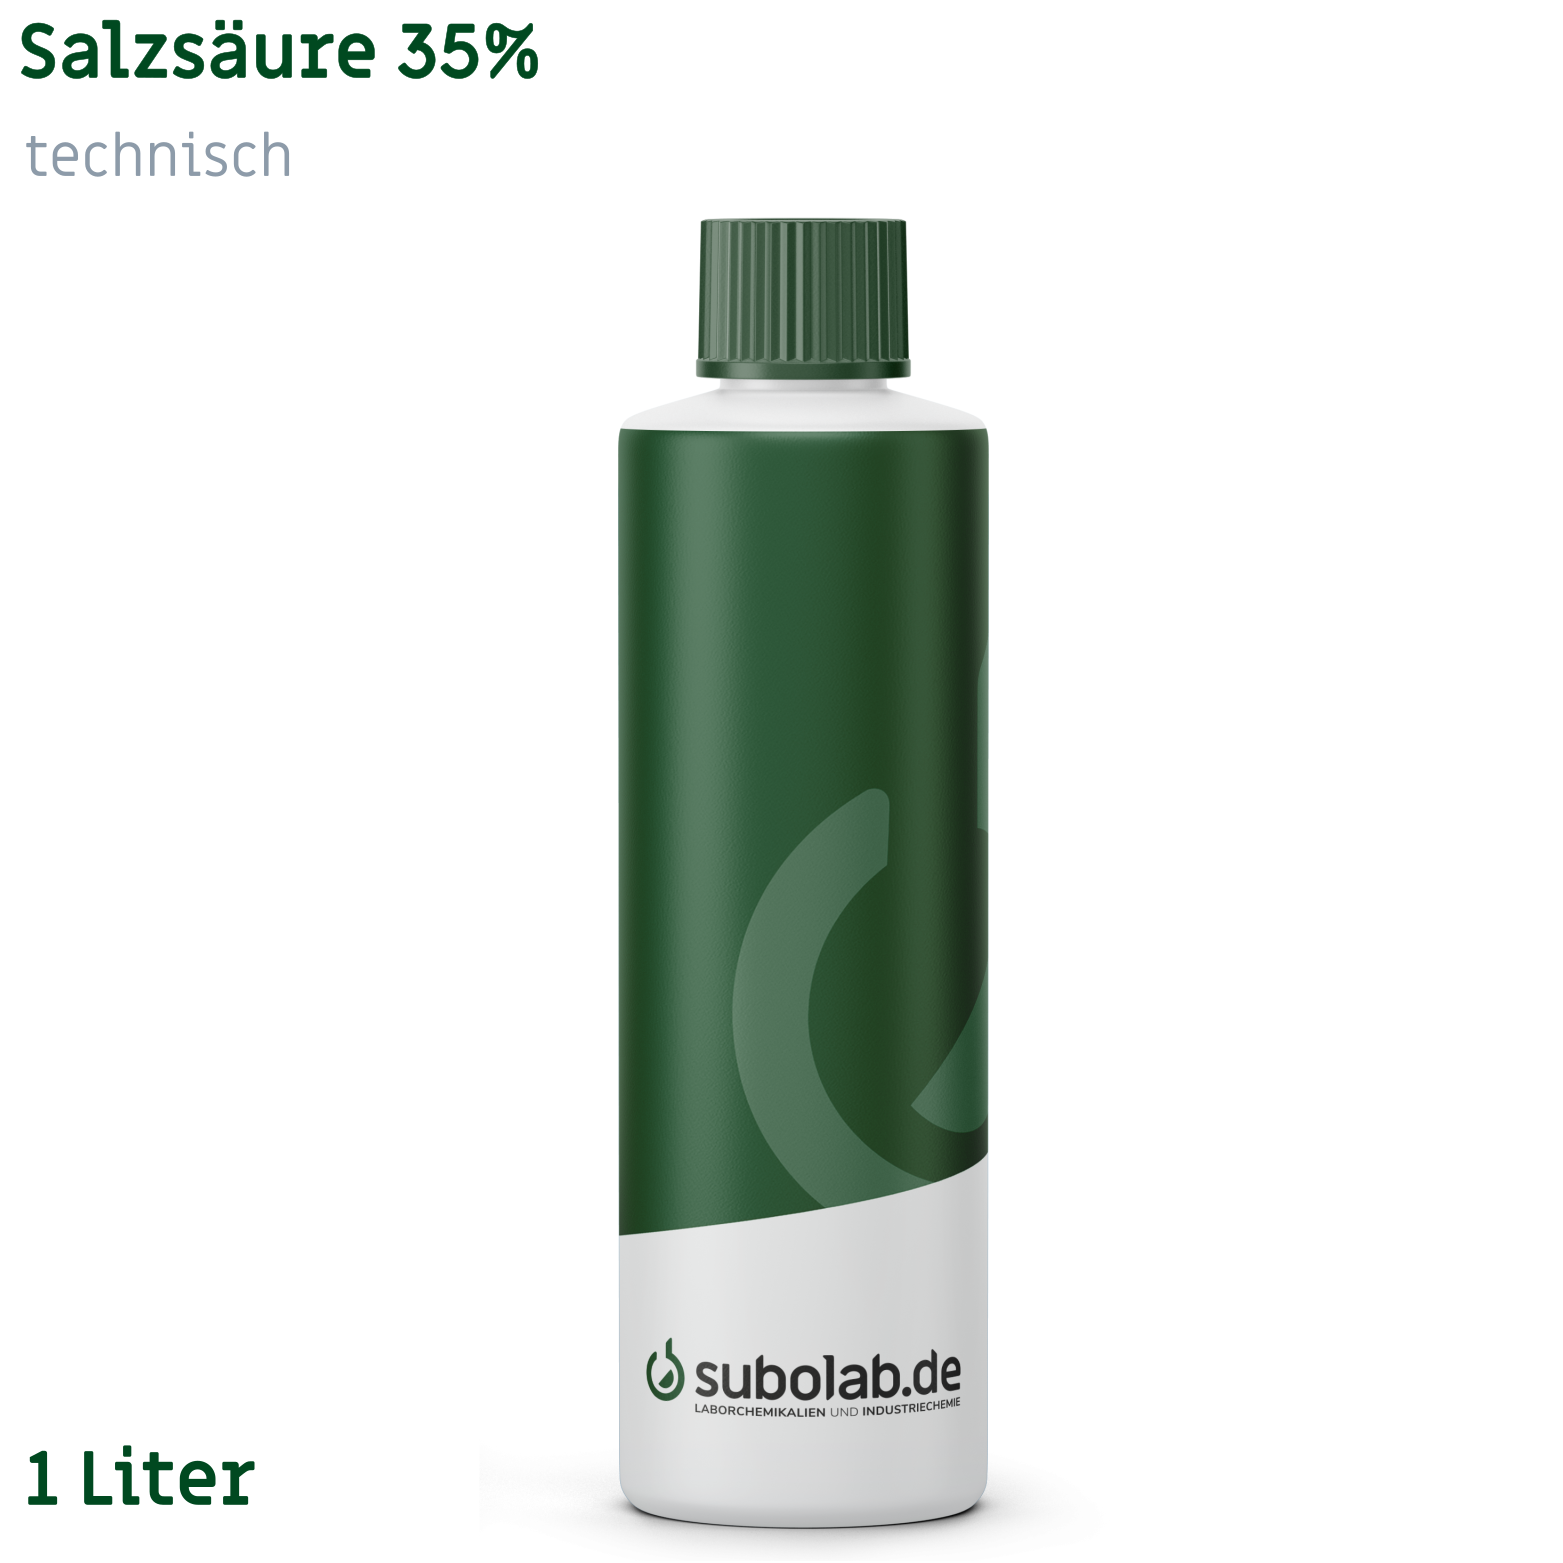 Bild von Salzsäure 35% technisch (1 Liter)